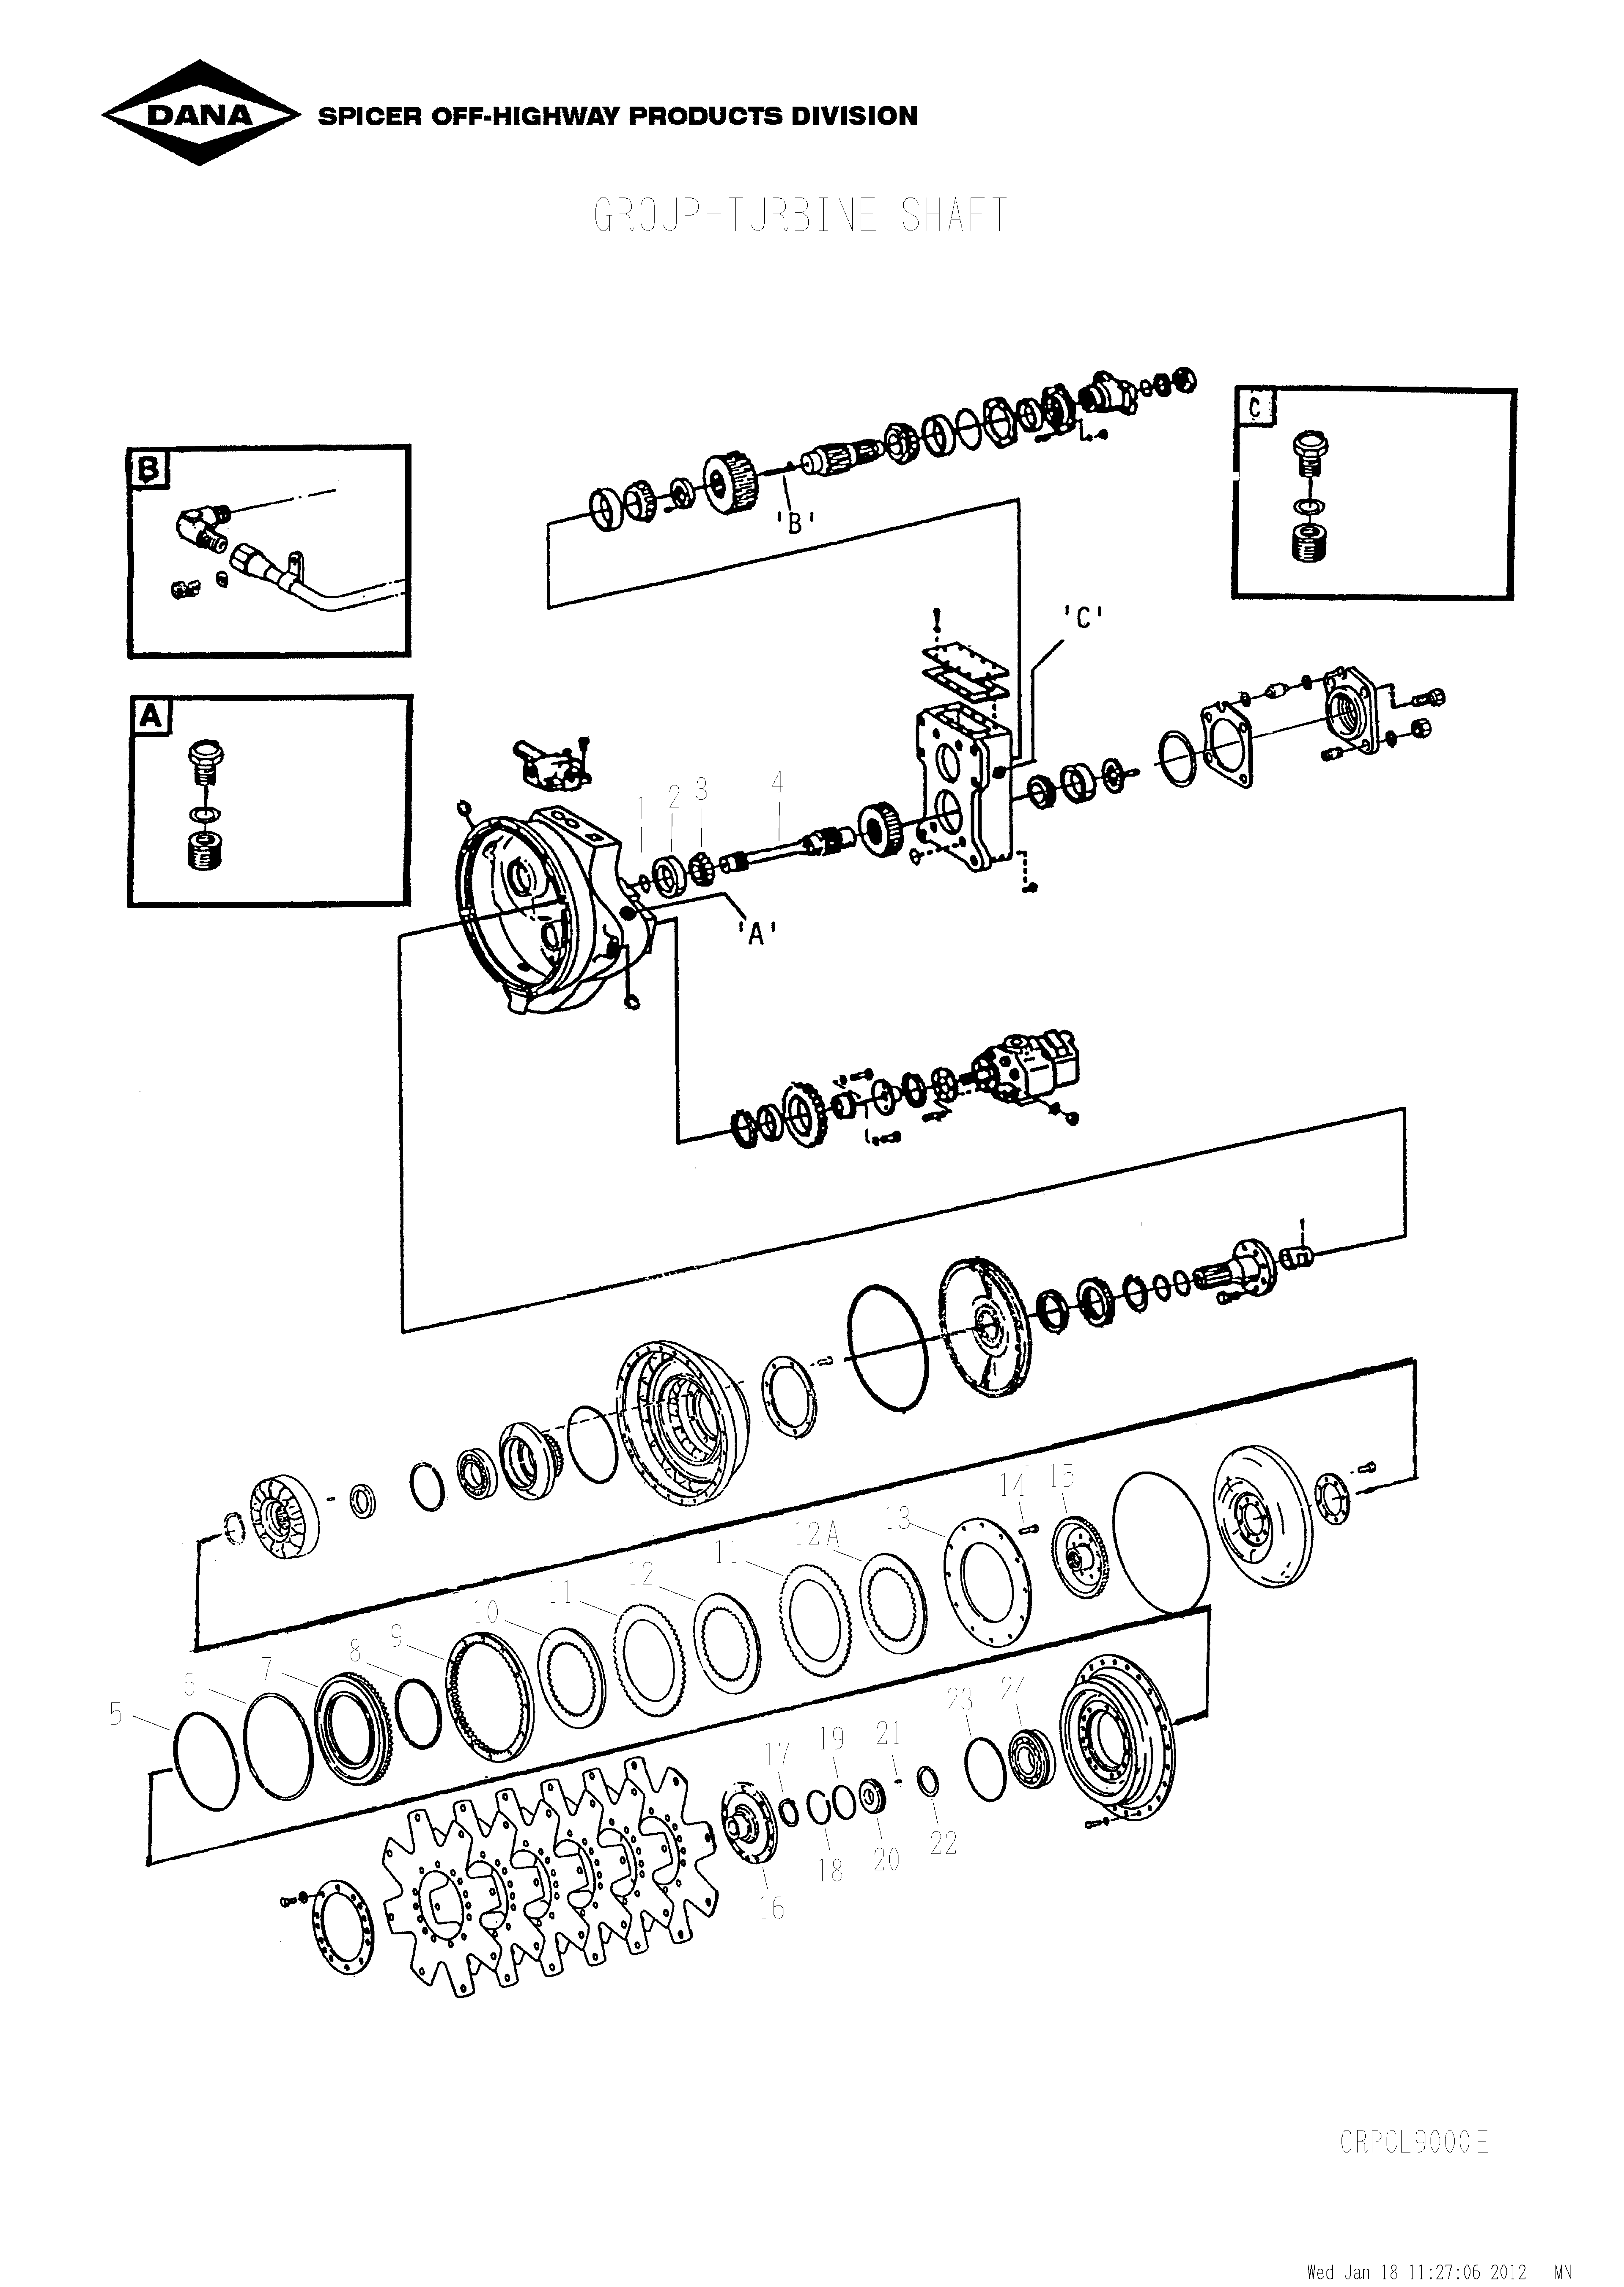 drawing for SCHOEMA, SCHOETTLER MASCHINENFABRIK K24.000085 - RING (figure 3)